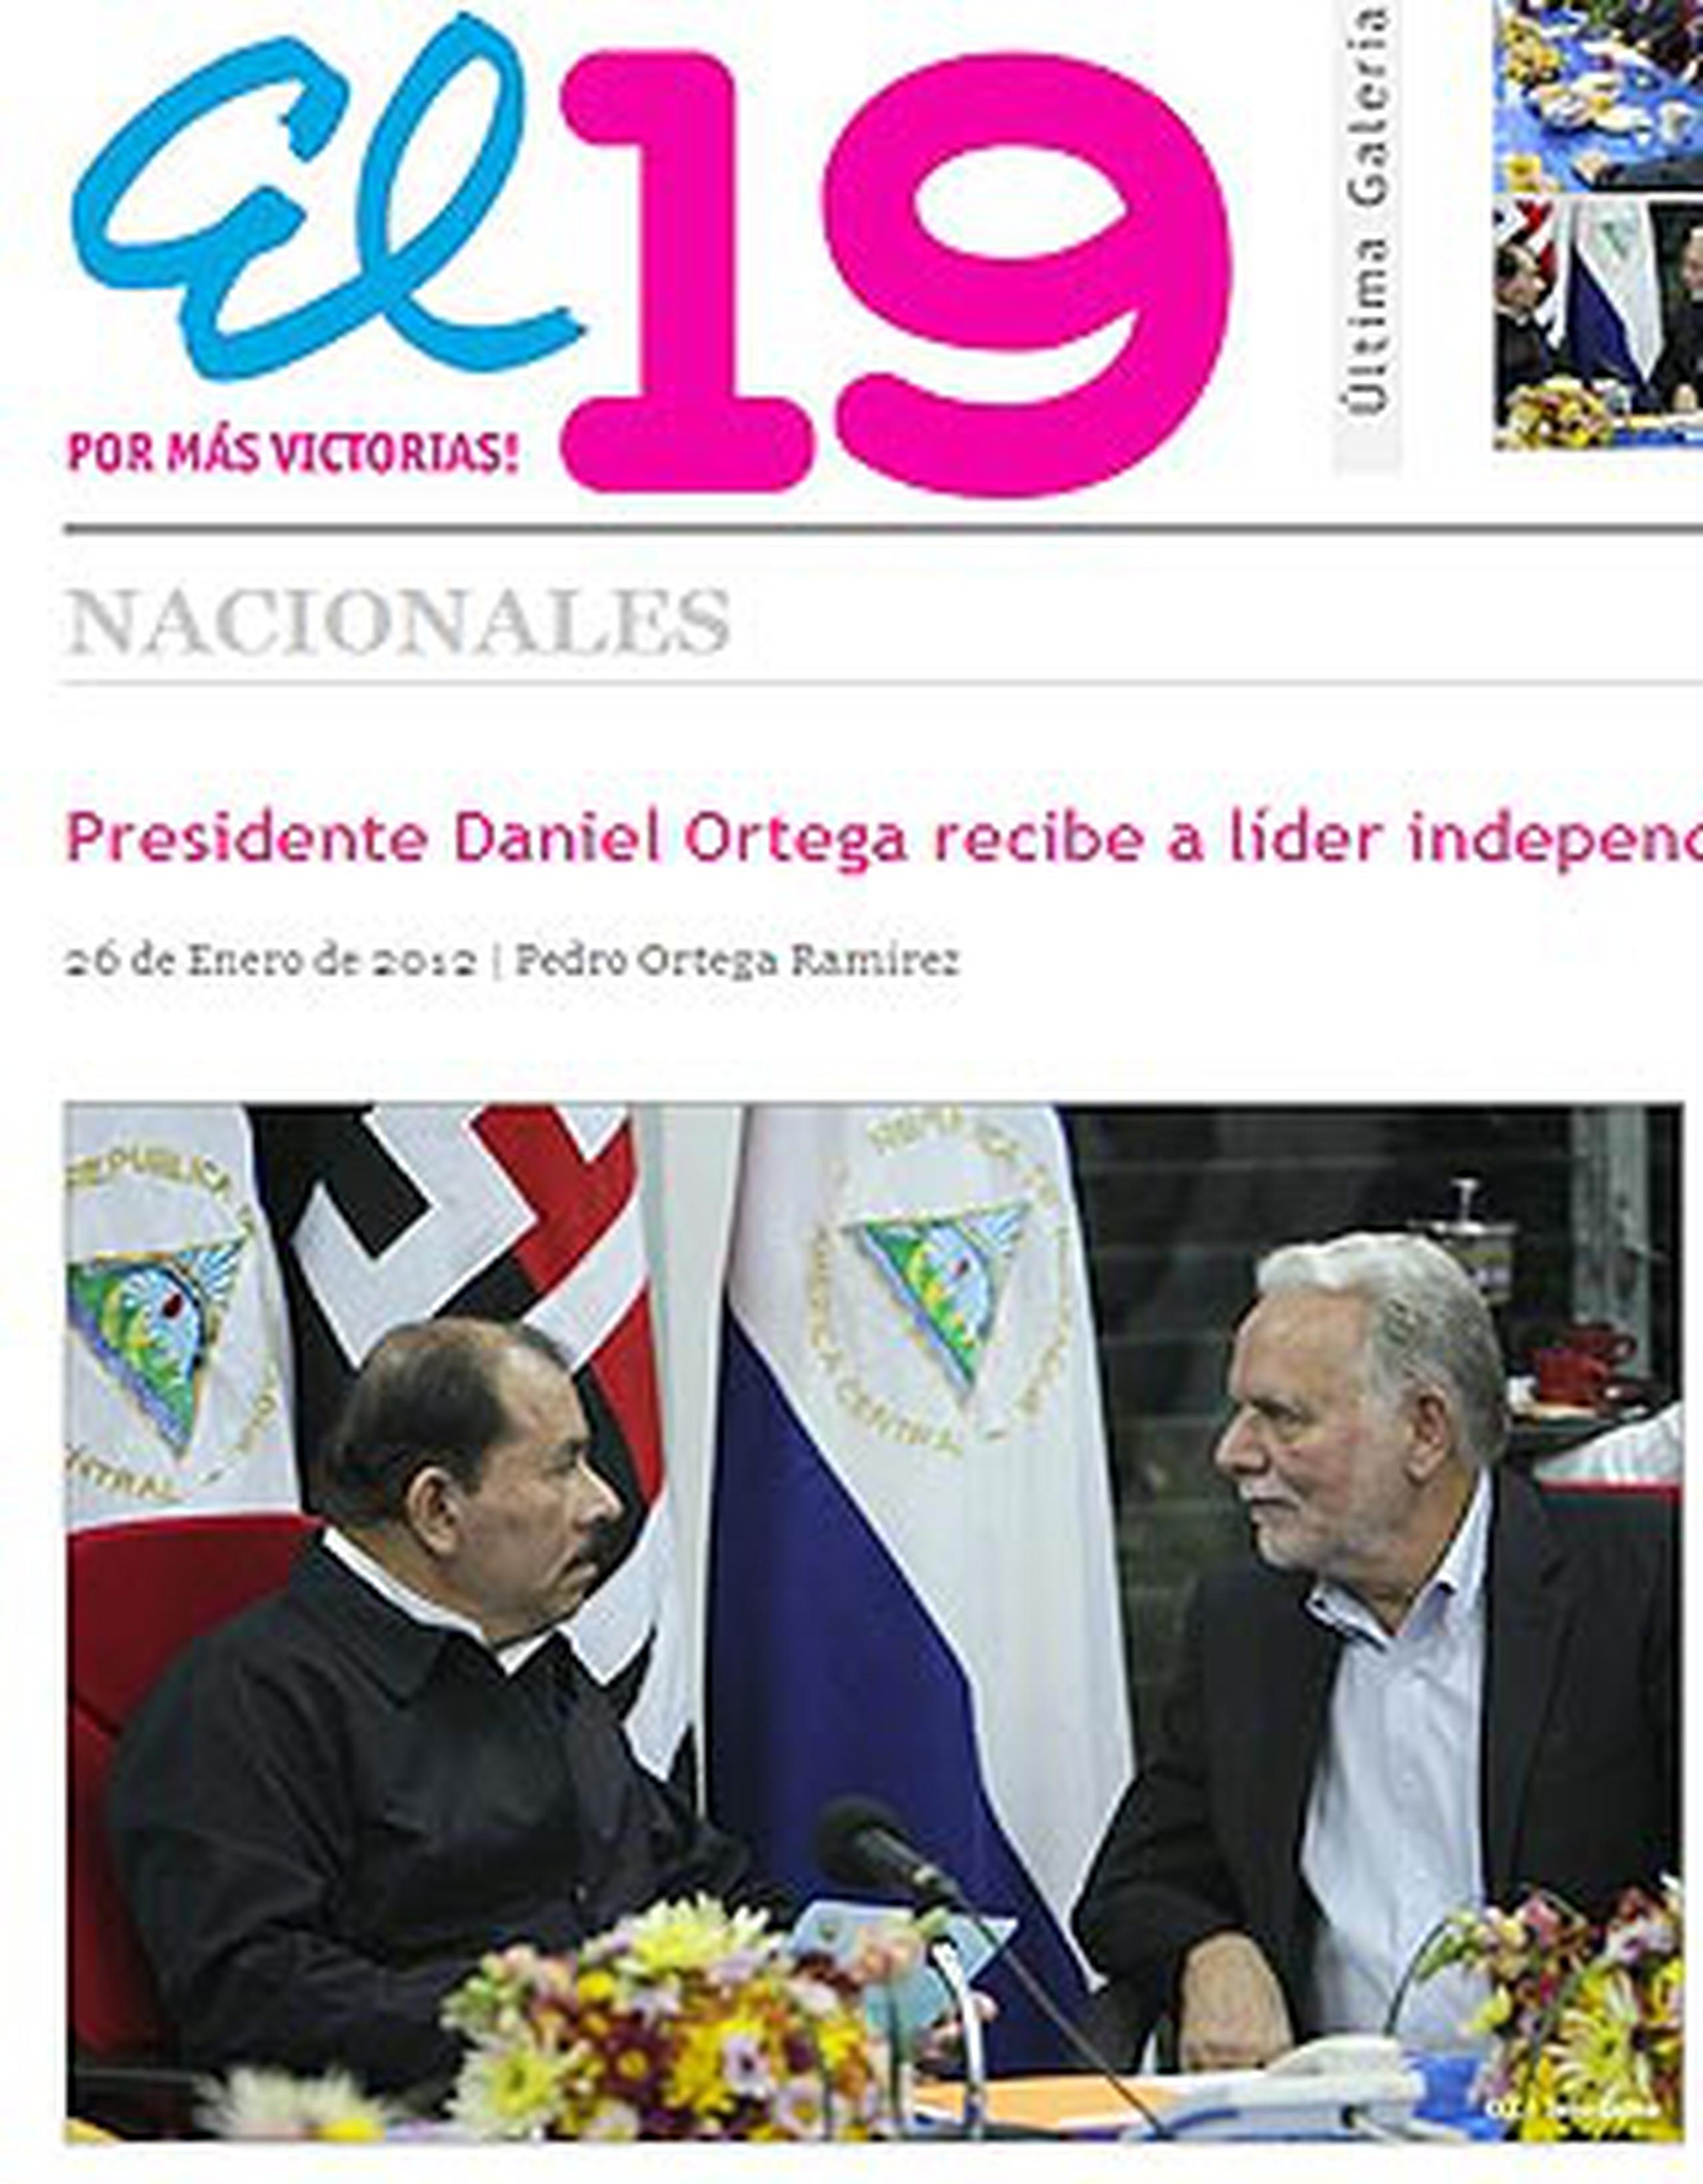 El presidente nicaragüense Daniel Ortega se reunió en privado anoche con el líder independentista Rubén Berríos Martínez y declaró que este es el "momento de retomar" el "acompañamiento" de la región a la "lucha" por la independencia de Puerto Rico. (El19.com)